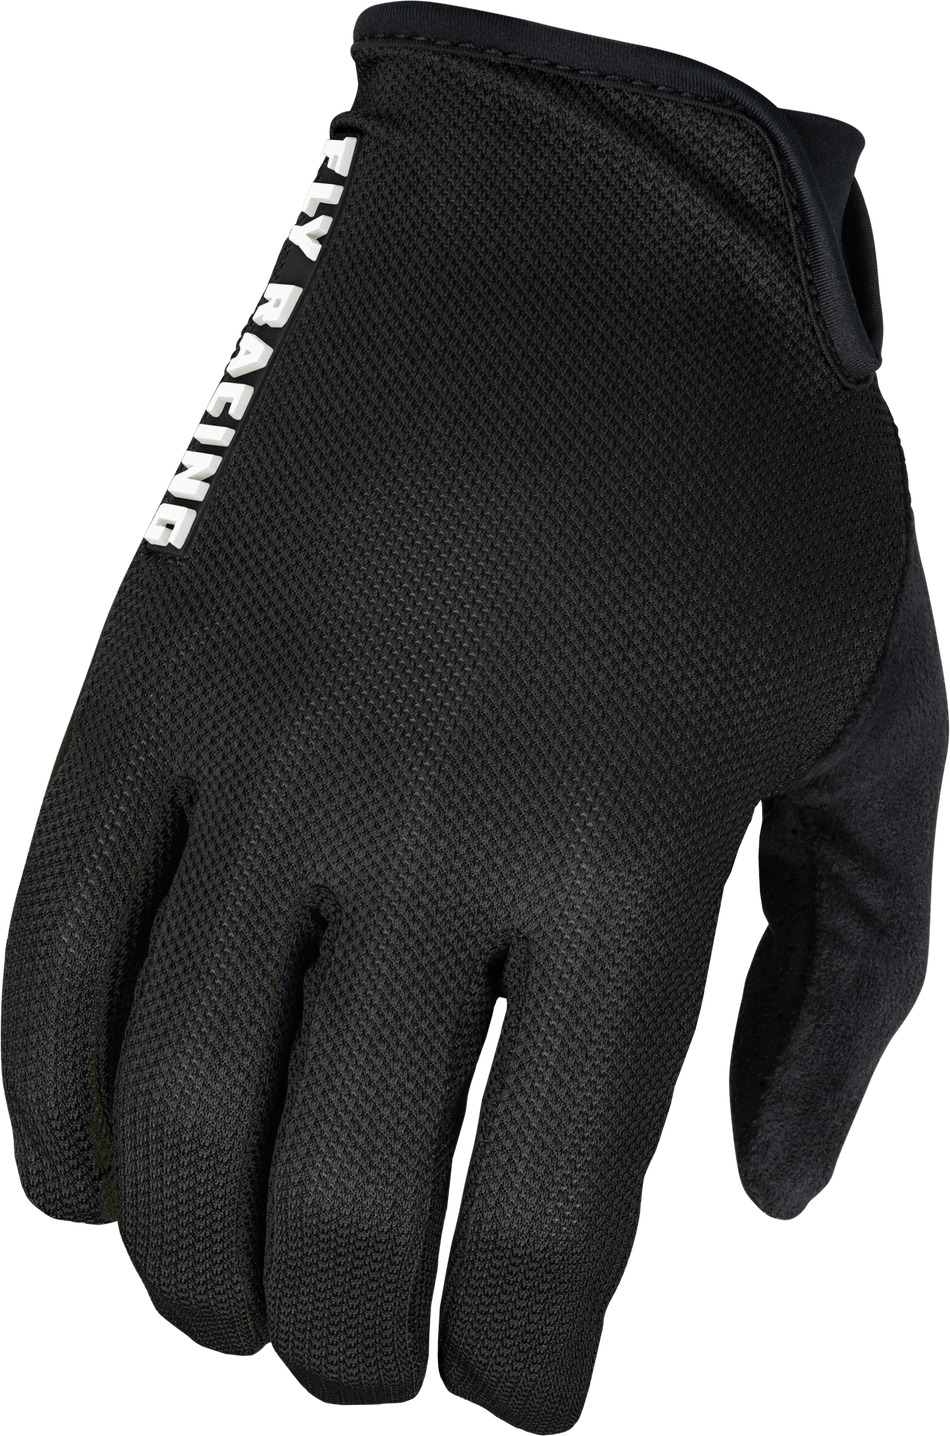 FLY RACING Mesh Gloves Black Xl 375-300X